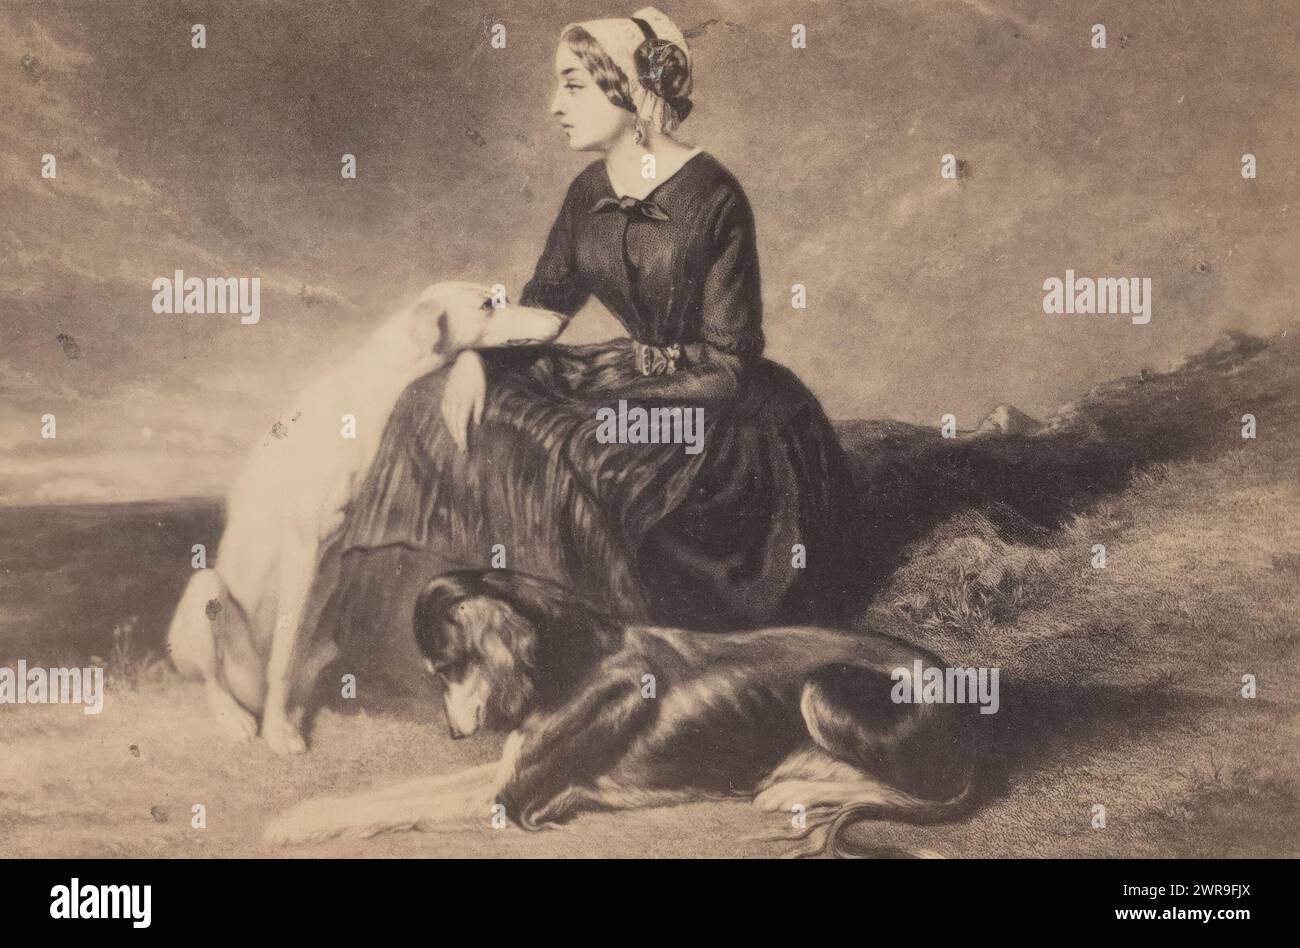 Reproduction photo d'un tableau, femme avec deux chiens dans le paysage, cette photo fait partie d'un album., Alfred de Dreux, après peinture par : anonyme, Berlin, 1860 - 1900, support photographique, tirage à l'albumen, hauteur 61 mm × largeur 101 mm, photographie Banque D'Images